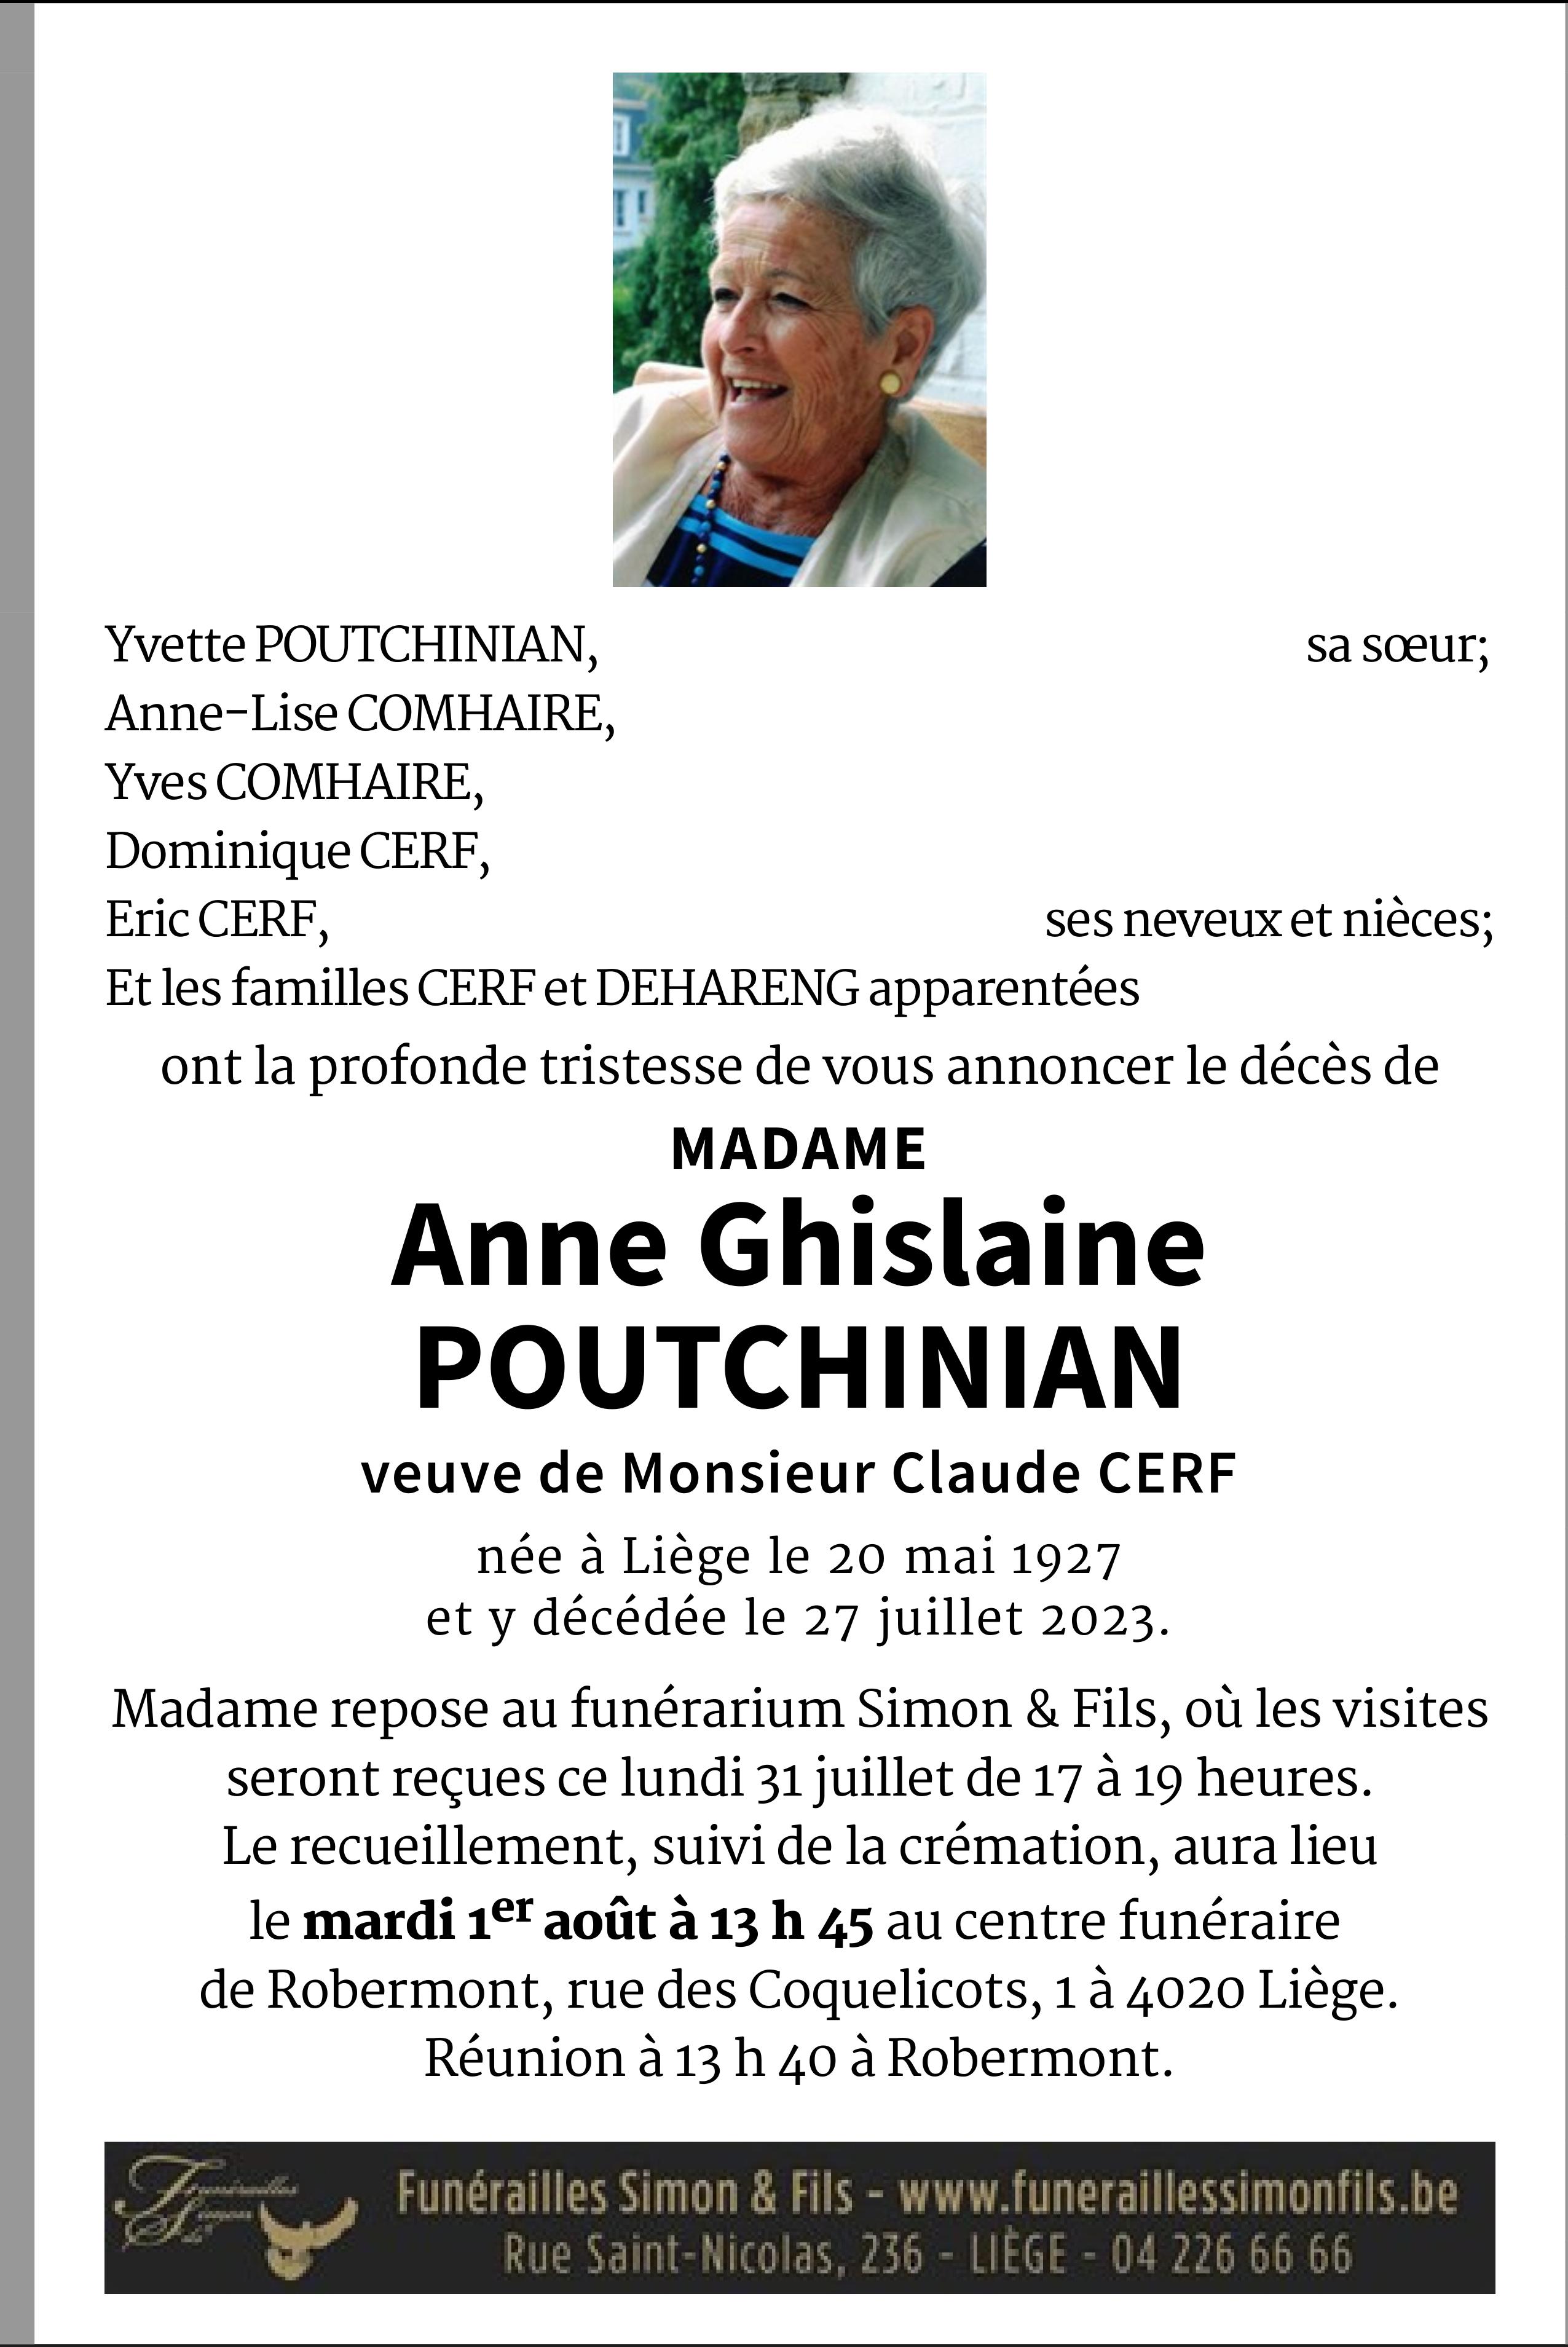 Anne Ghislaine POUTCHINIAN - CERF de Liège - Annonce de décès sur ...